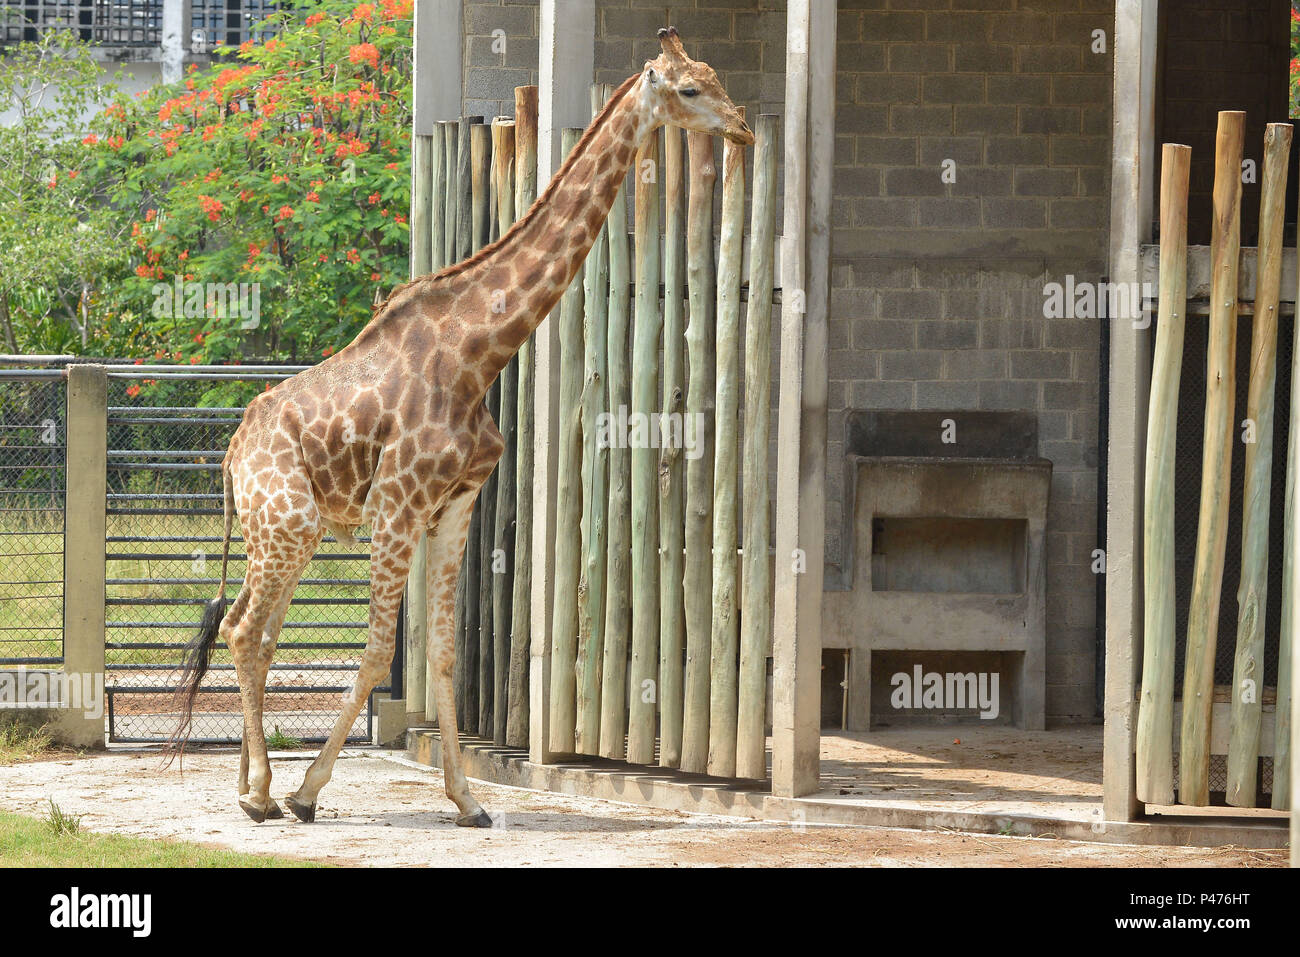 Rio de Janeiro/RJ, Brasil - 23/01/2015 – O Zoológico do Rio corre o risco  de ficar sem a única girafa que tem devido a uma decisão da Justiça do  Distrito Federal, que